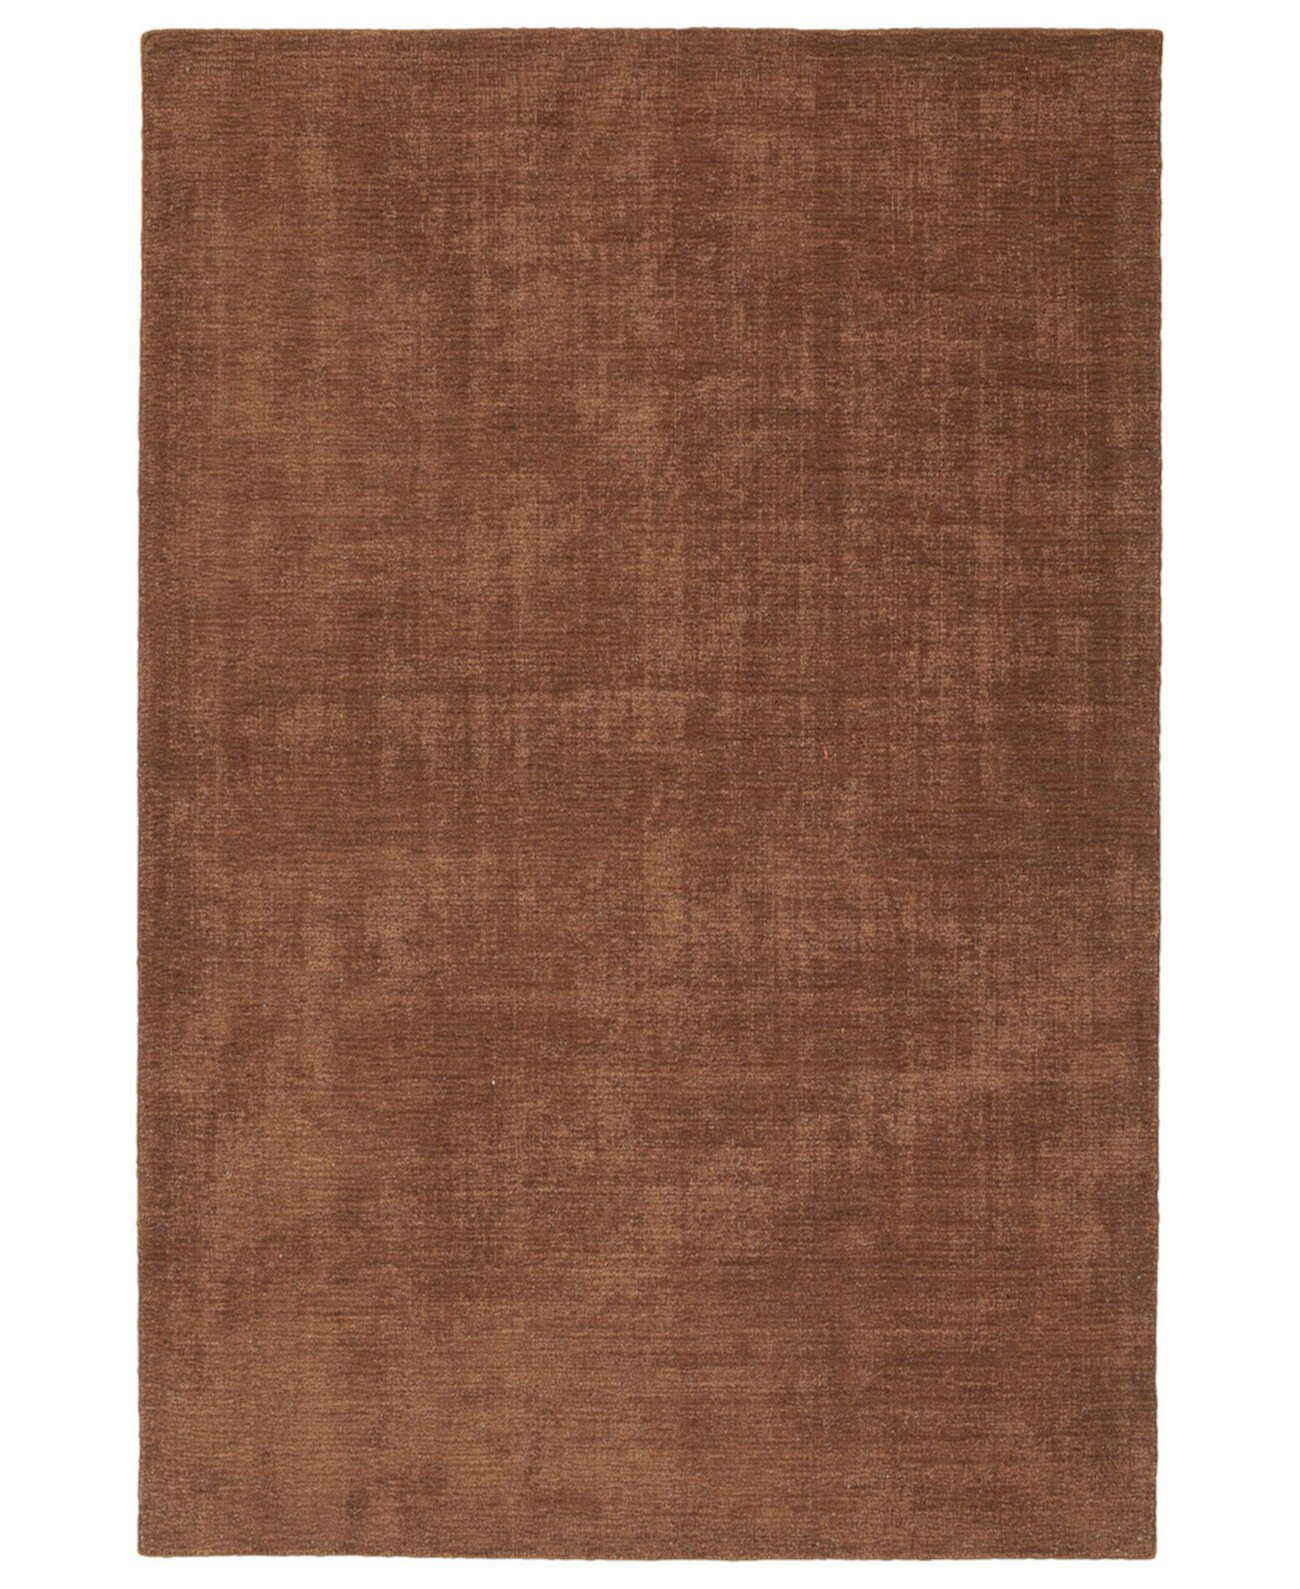 Lauderdale LDD01-82 Светло-коричневый коврик для улицы размером 3 х 5 футов 6 дюймов Kaleen